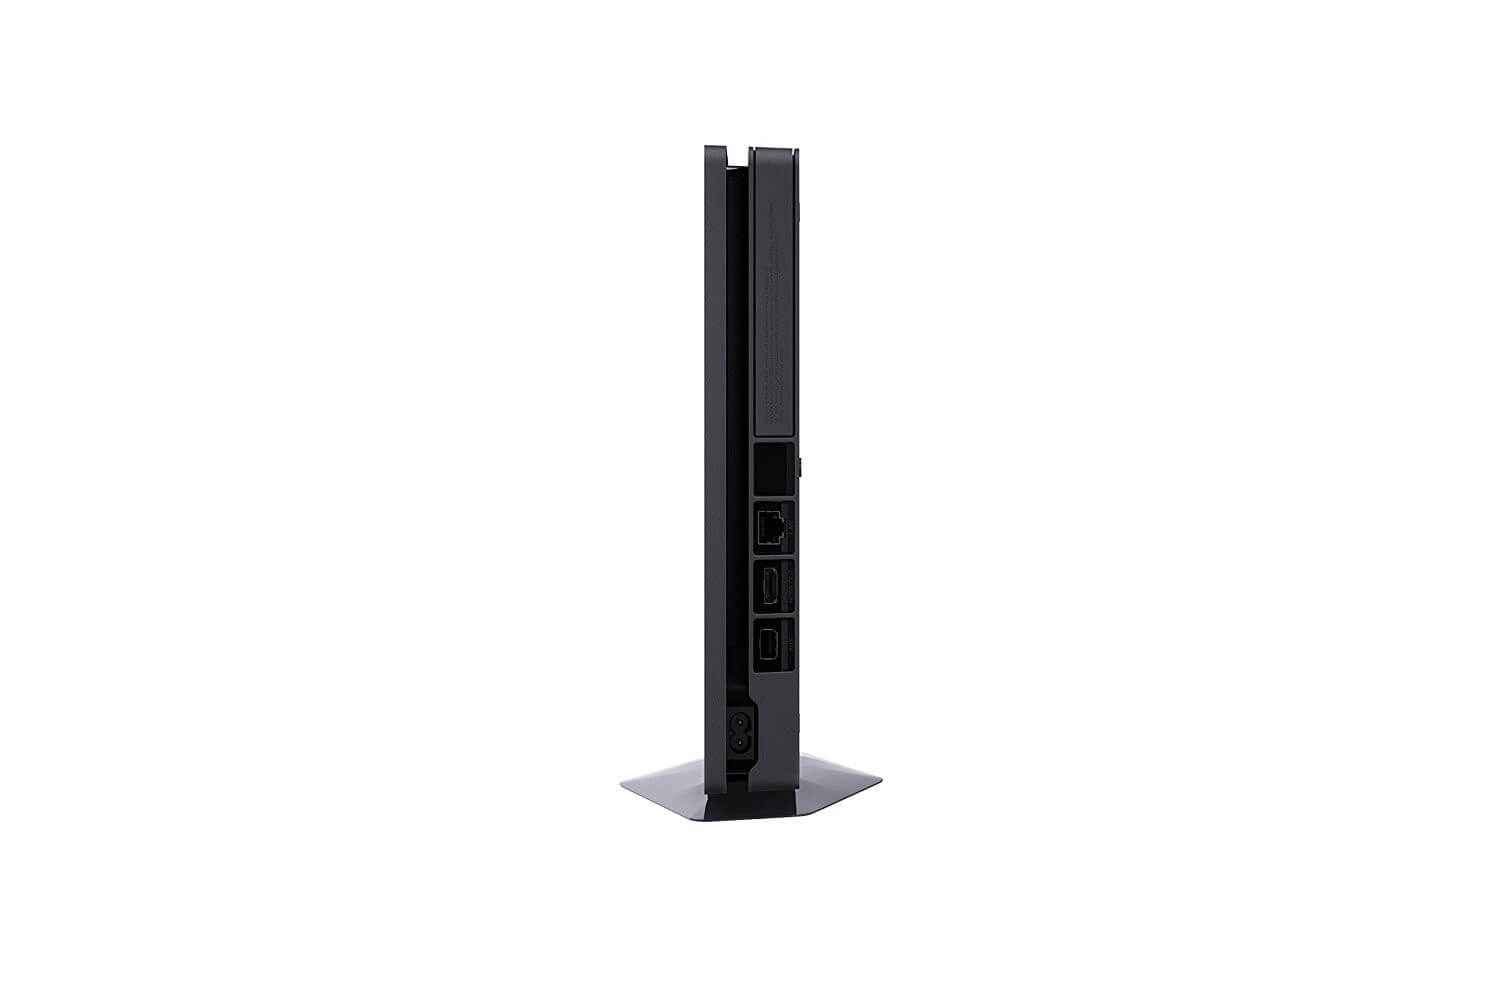 Žaidimų konsolė SONY PlayStation 4 (PS4) Slim 500GB (juoda)